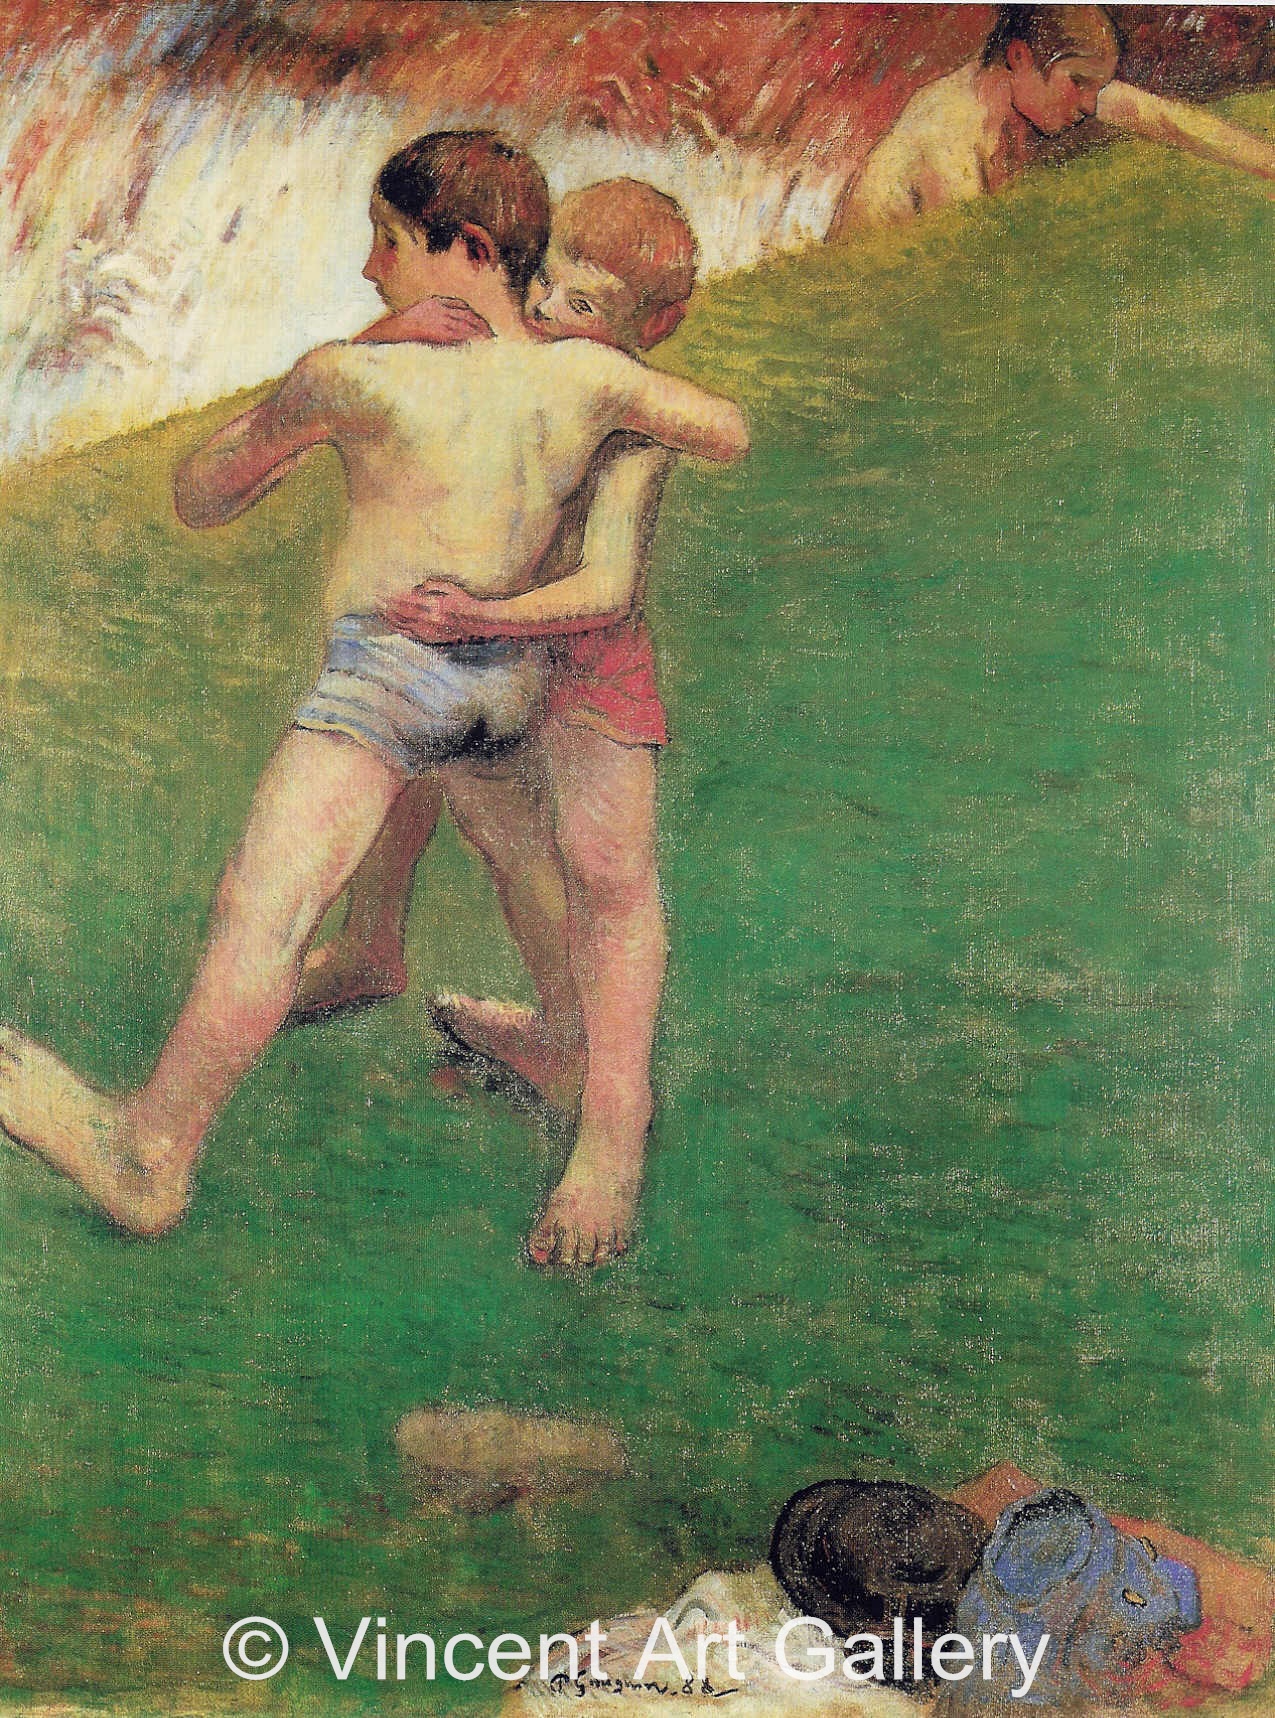 A3601, GAUGUIN, Children Wrestling, 1888